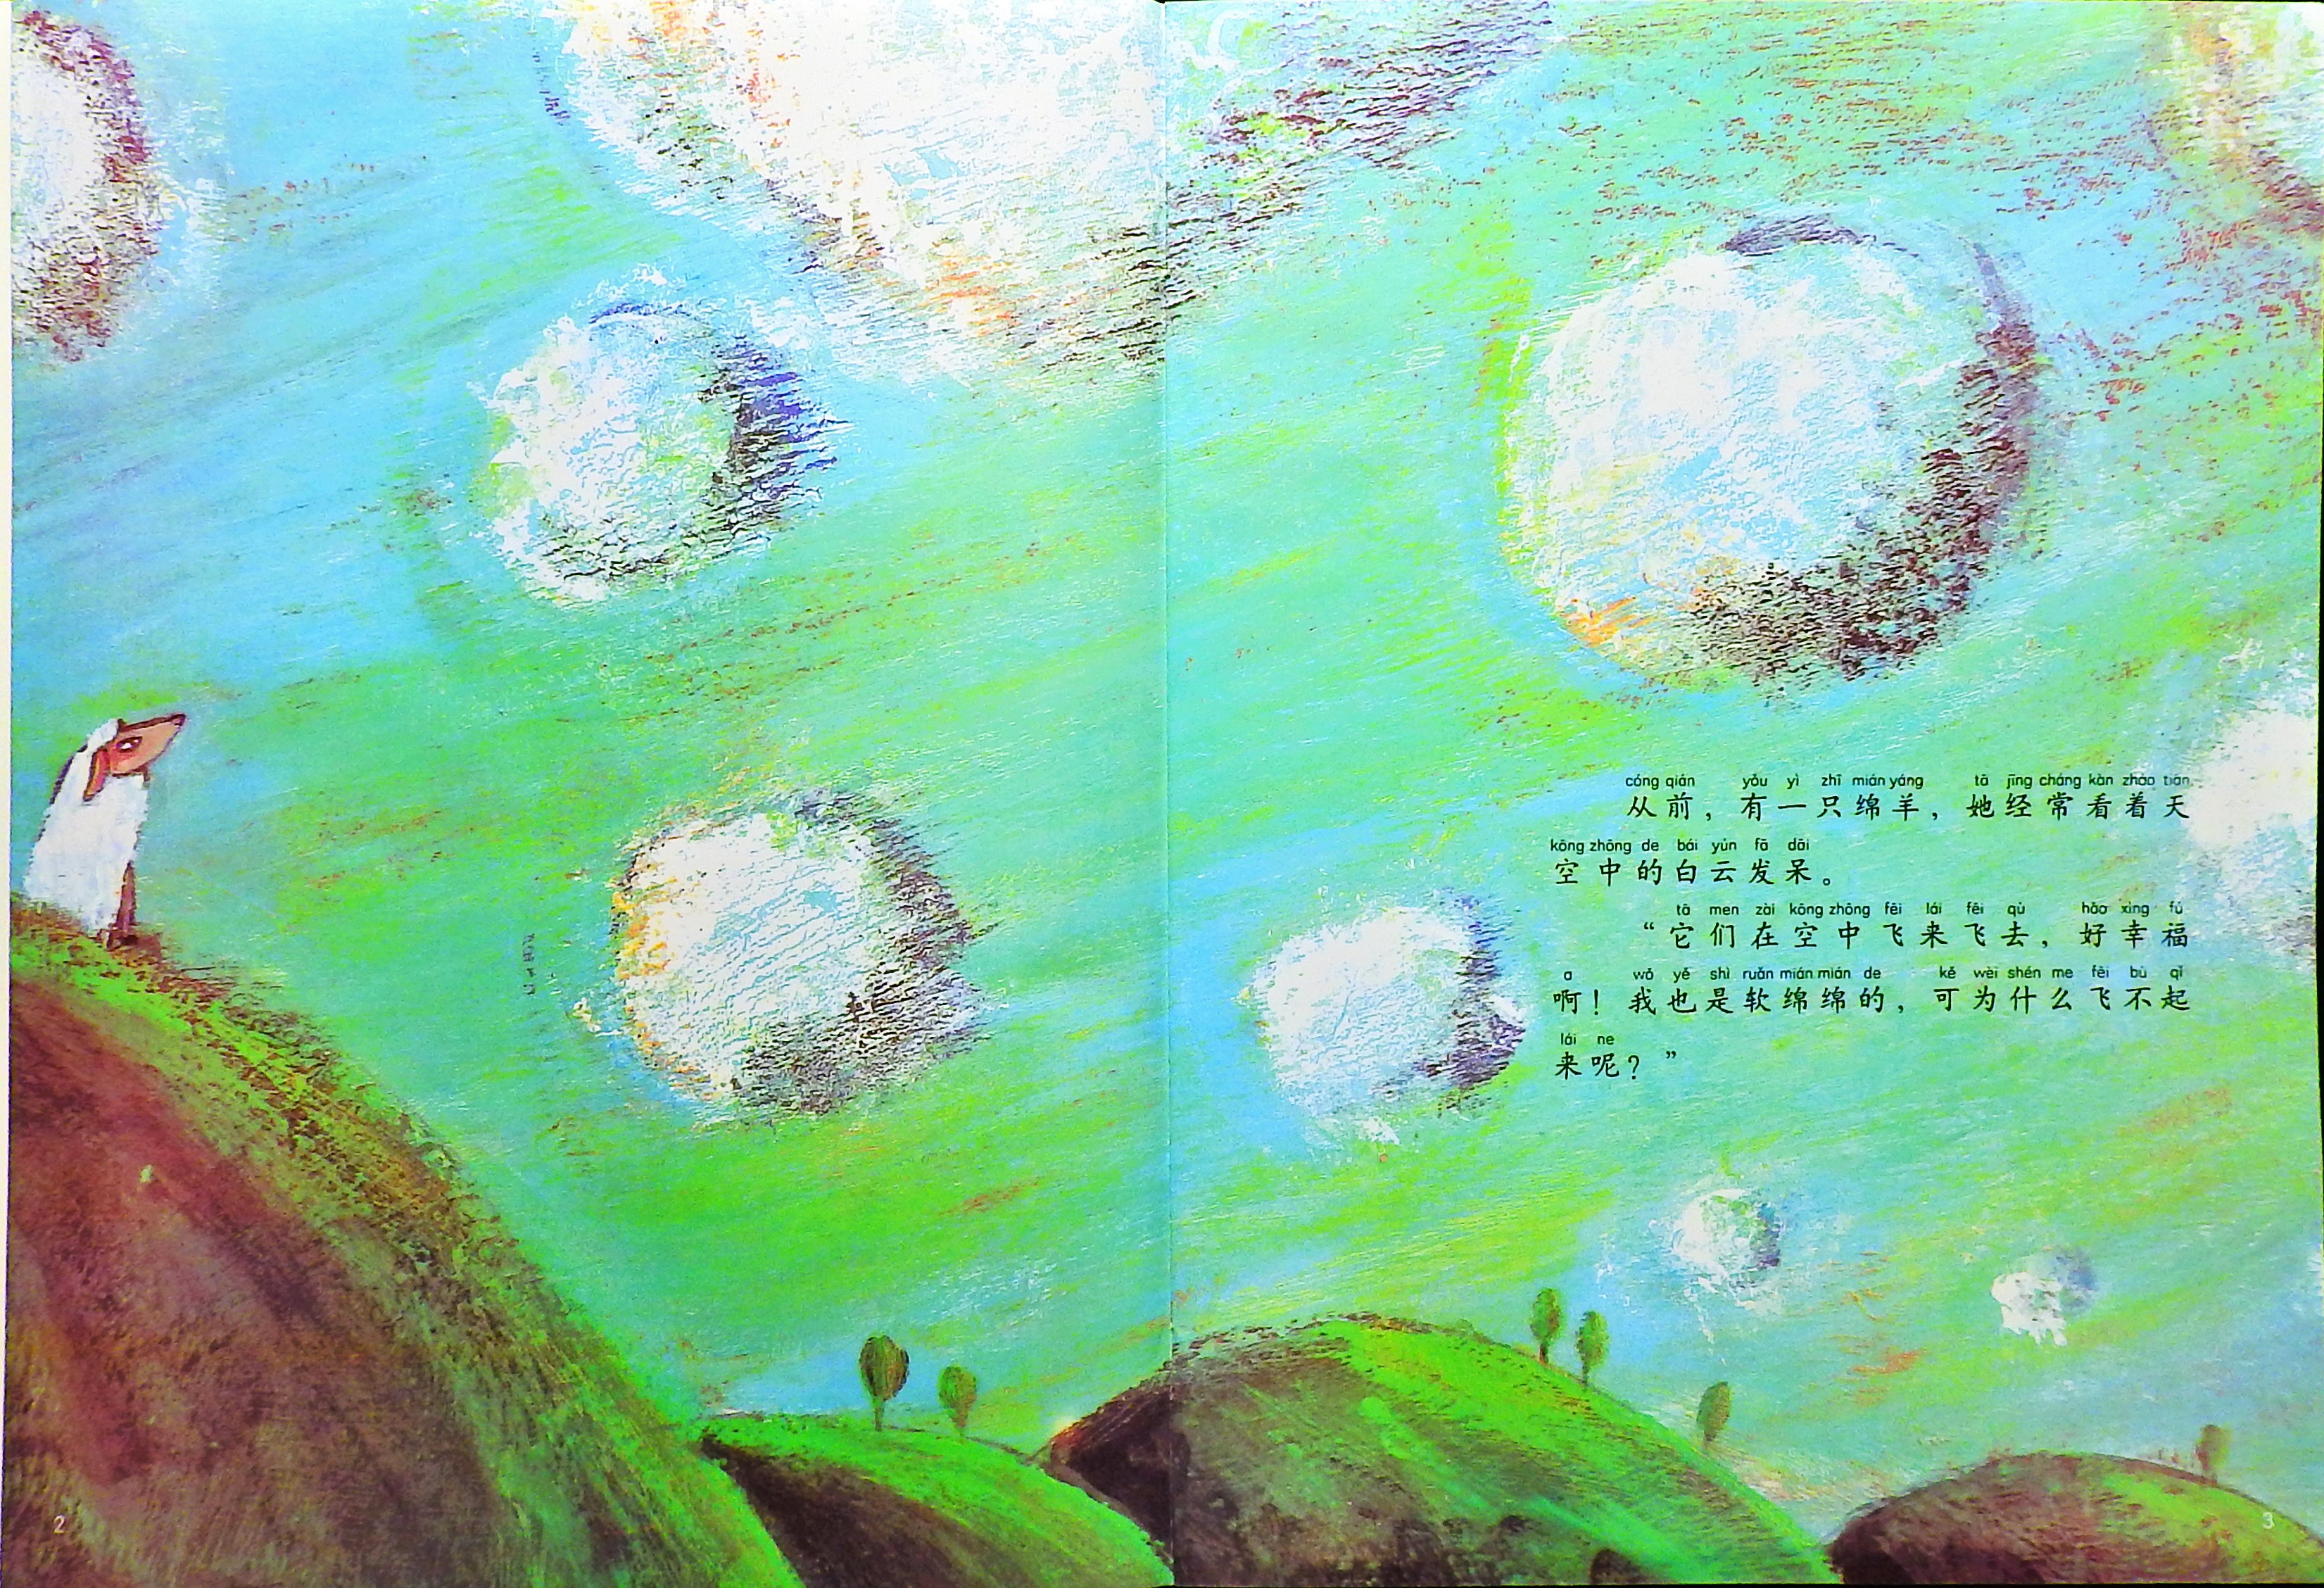 飞上天空的绵羊 (03),绘本,绘本故事,绘本阅读,故事书,童书,图画书,课外阅读